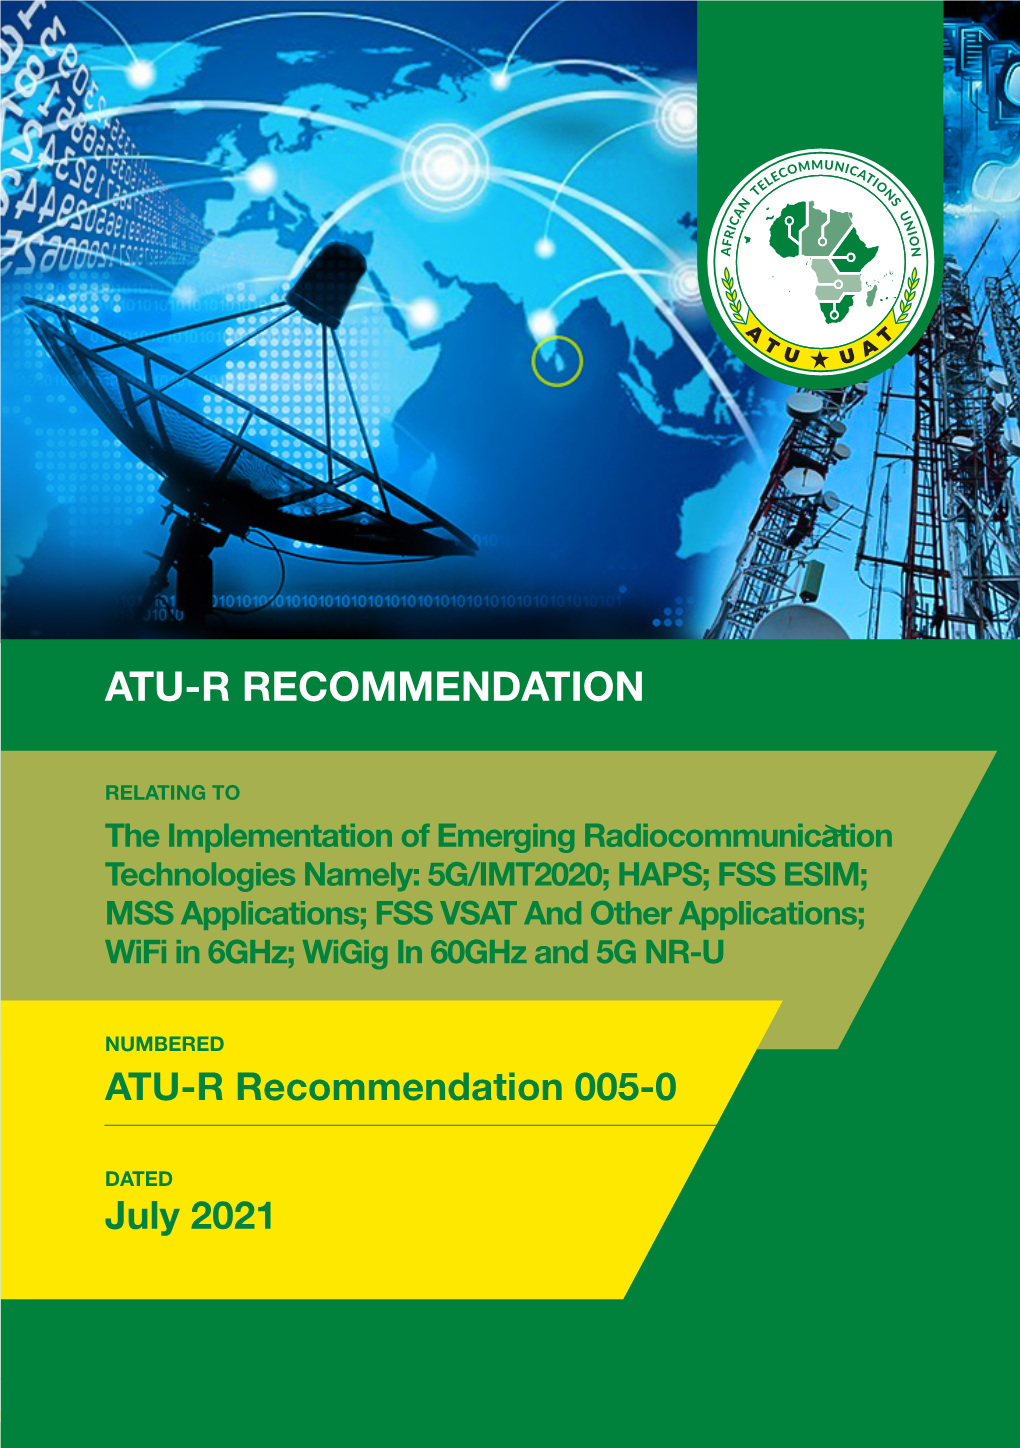 ATU-R Recommendation 005-0